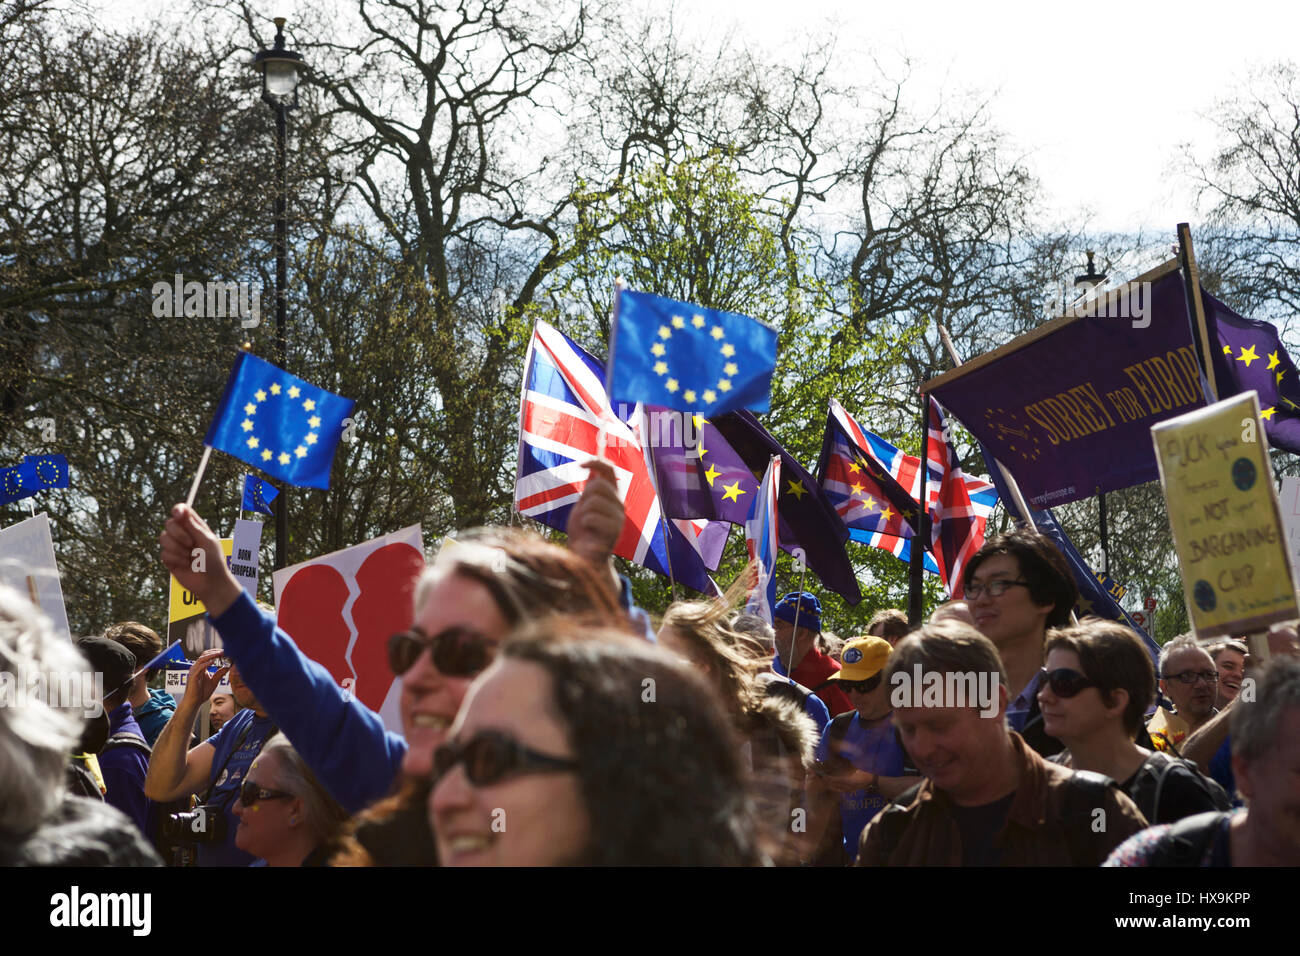 Londres, Royaume-Uni. 25 mars 2017. S'unir pour l'Europe a organisé une UE Pro mars à Londres. Des manifestants anti-BREXIT mars de Park Lane à la place du Parlement. Vote du peuple. Crédit : Tony Farrugia/Alamy Live News Banque D'Images